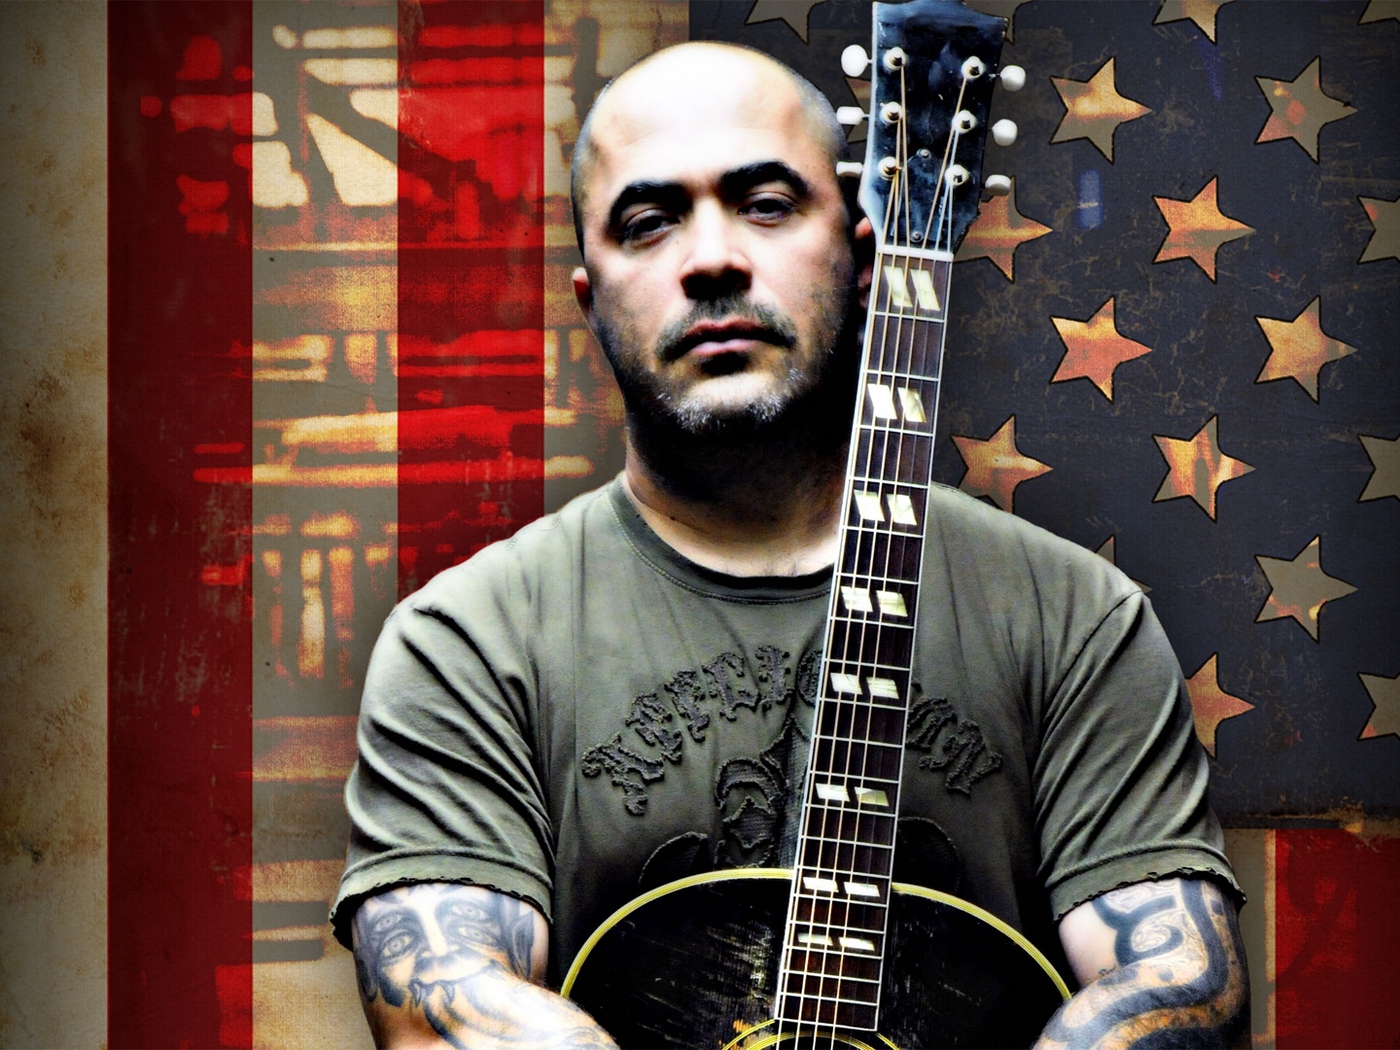 Download wallpaper 1400x1050 aaron lewis guitar bald tattoo